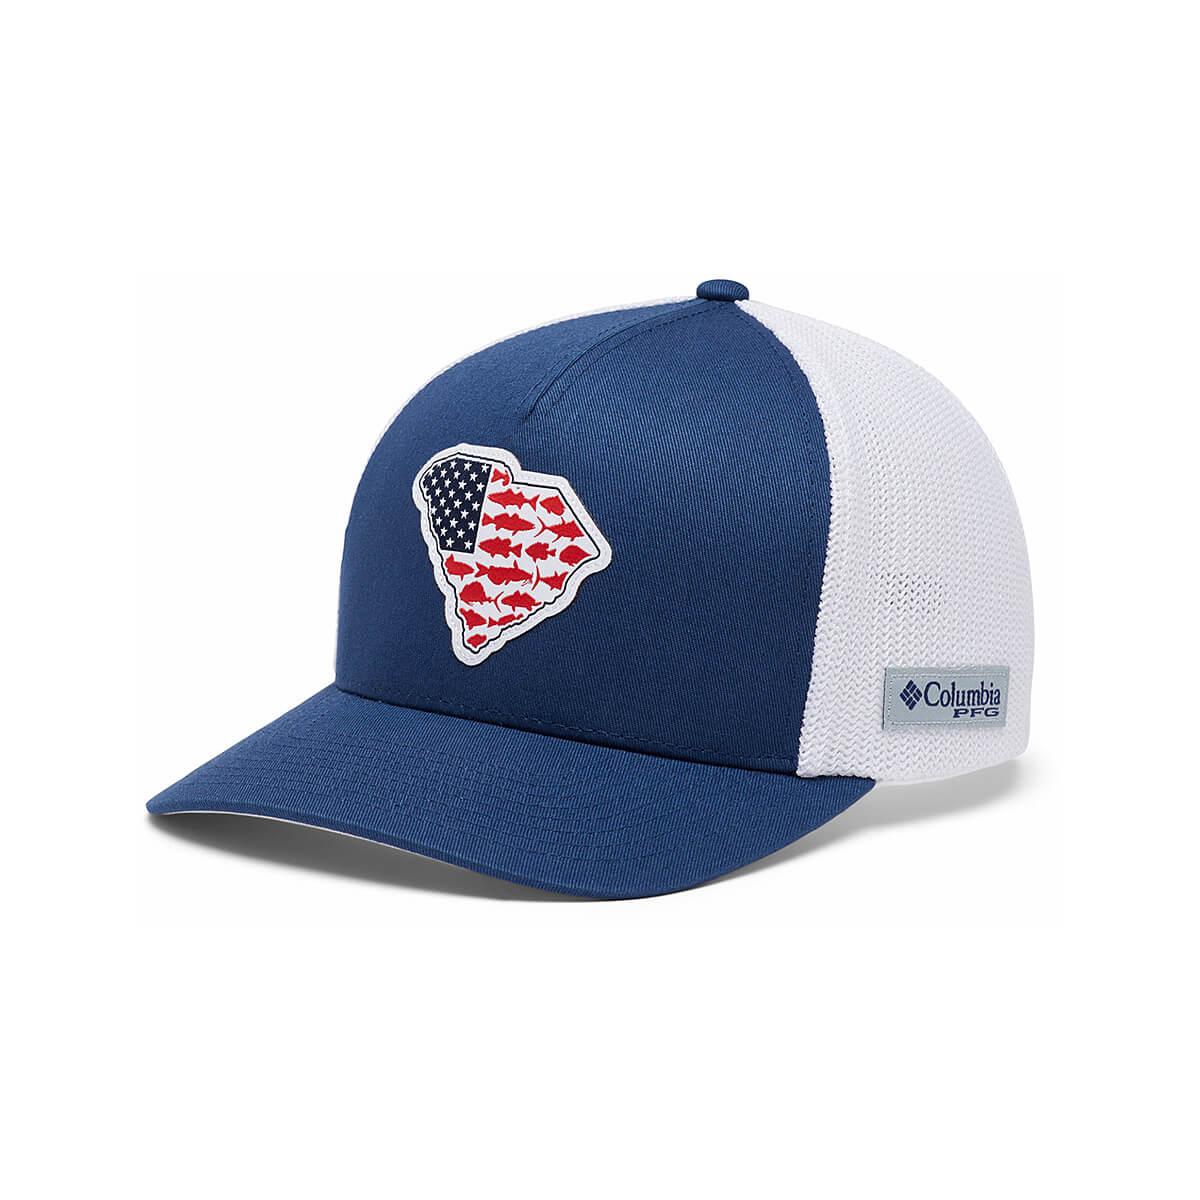 SC Select Baseball Jersey - Navy Palmetto Design - JayMac Sports Products